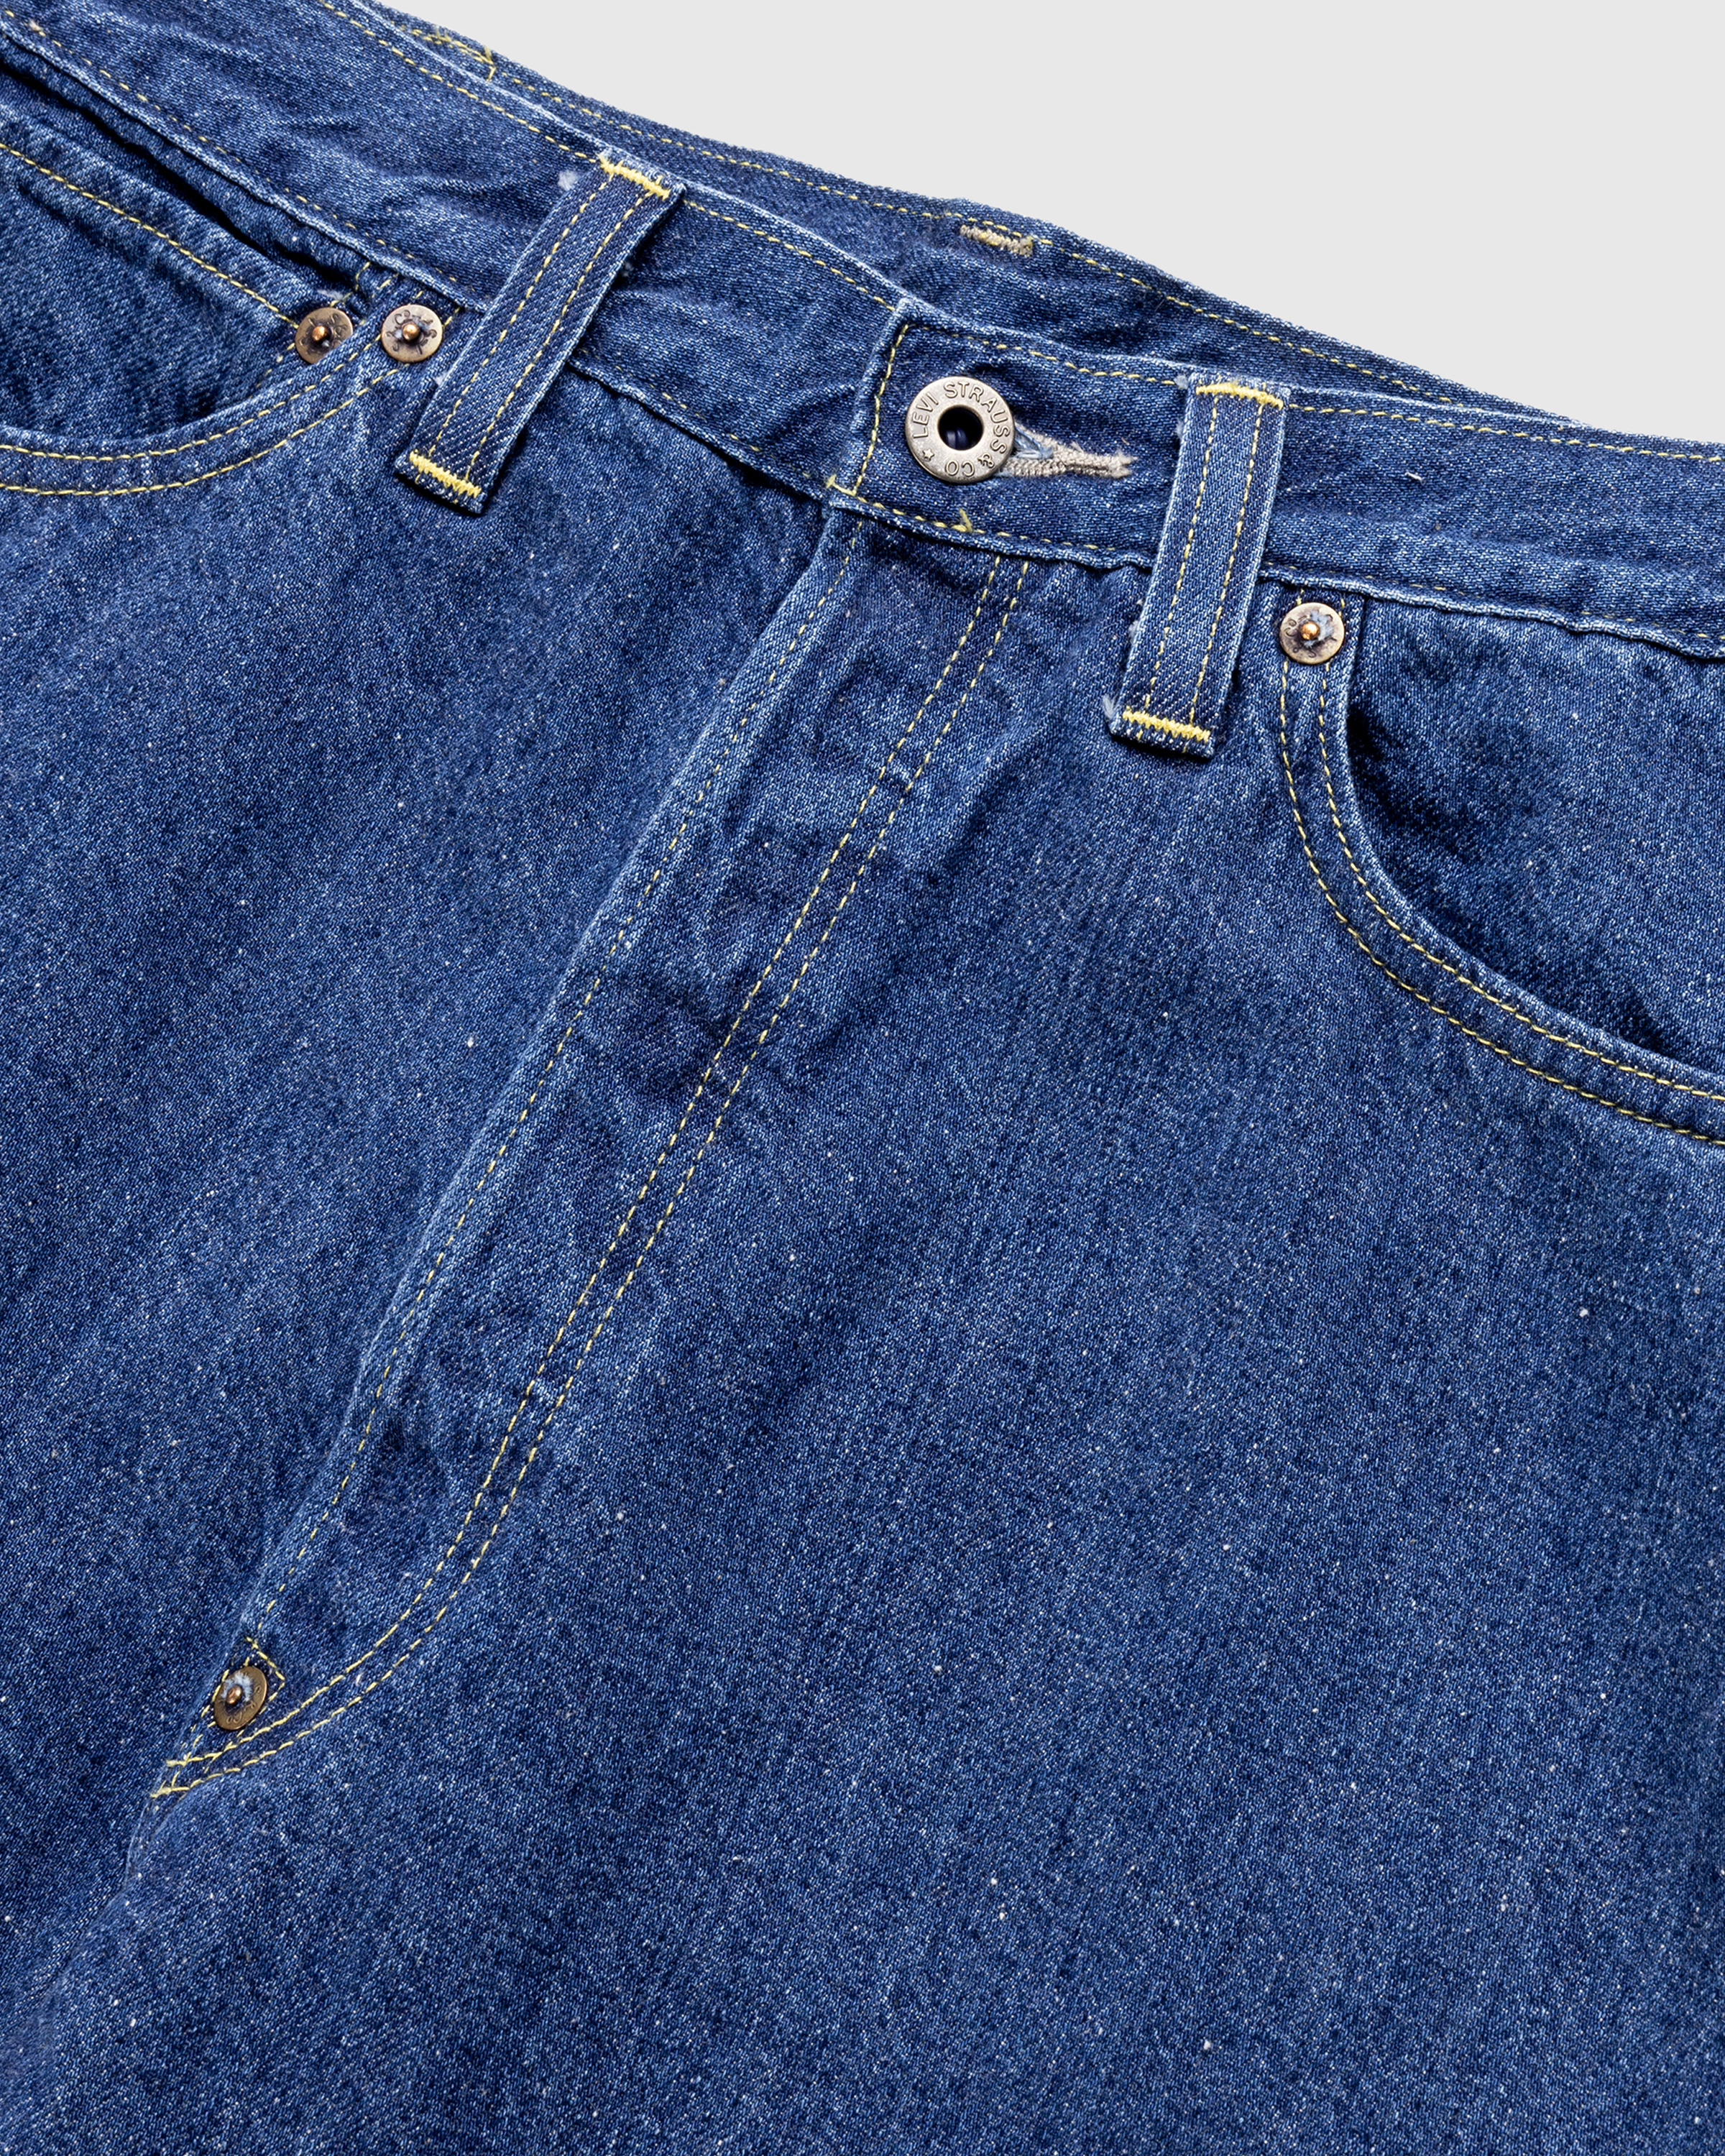 Levi's – 1930s Viola Longacre 401 Jeans Rinsed Blue - Denim - Blue - Image 8